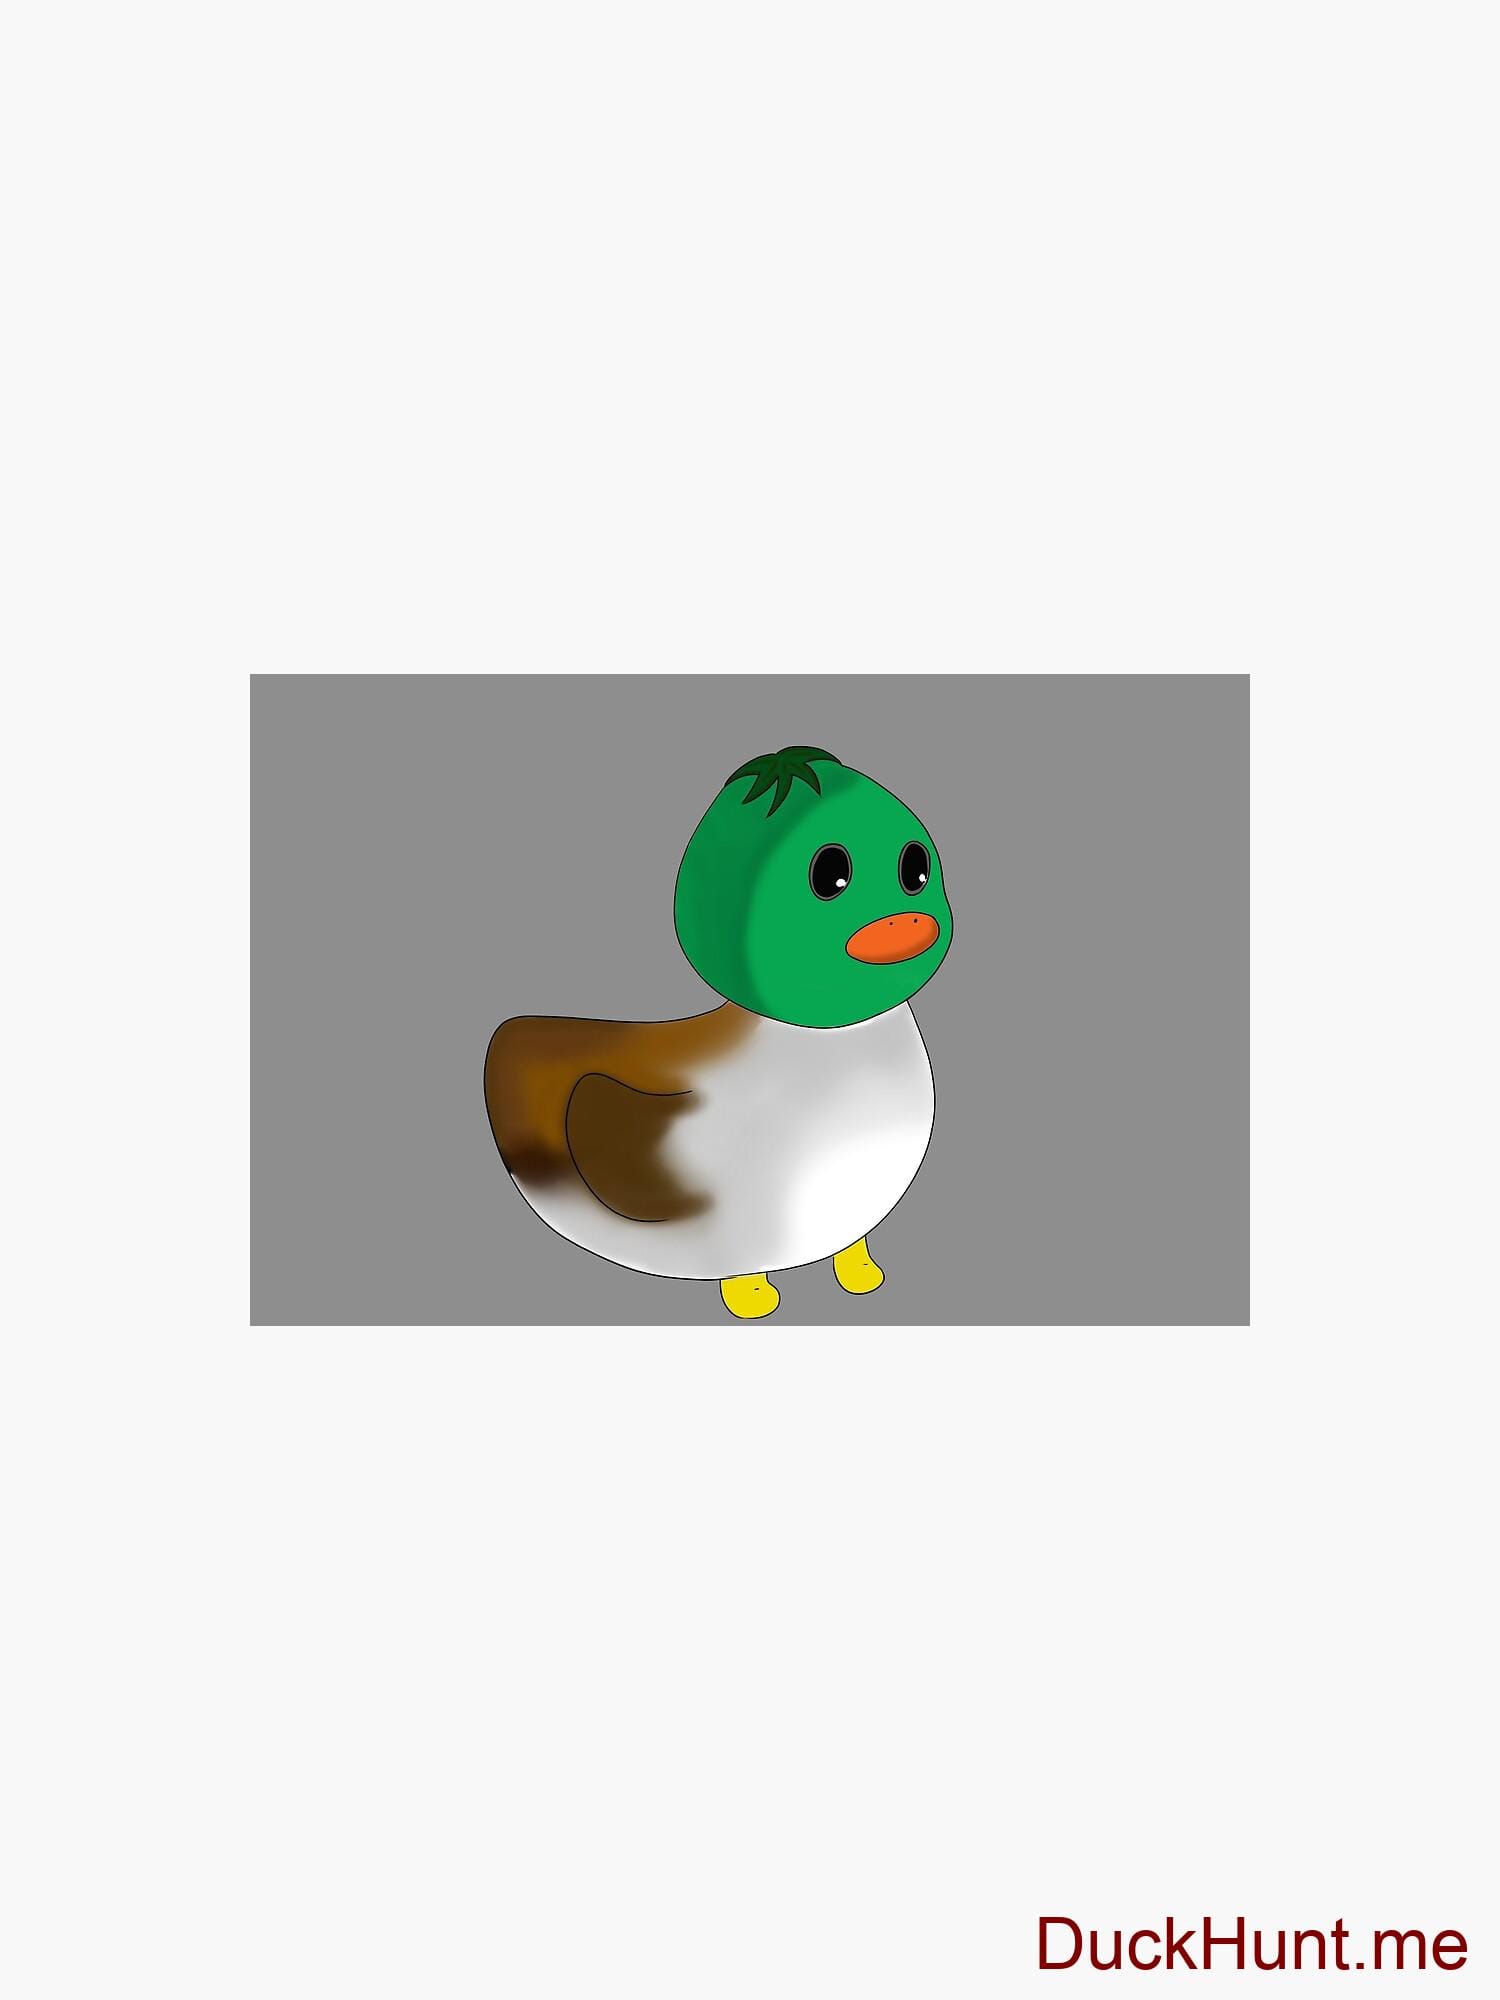 Normal Duck Zipper Pouch alternative image 2